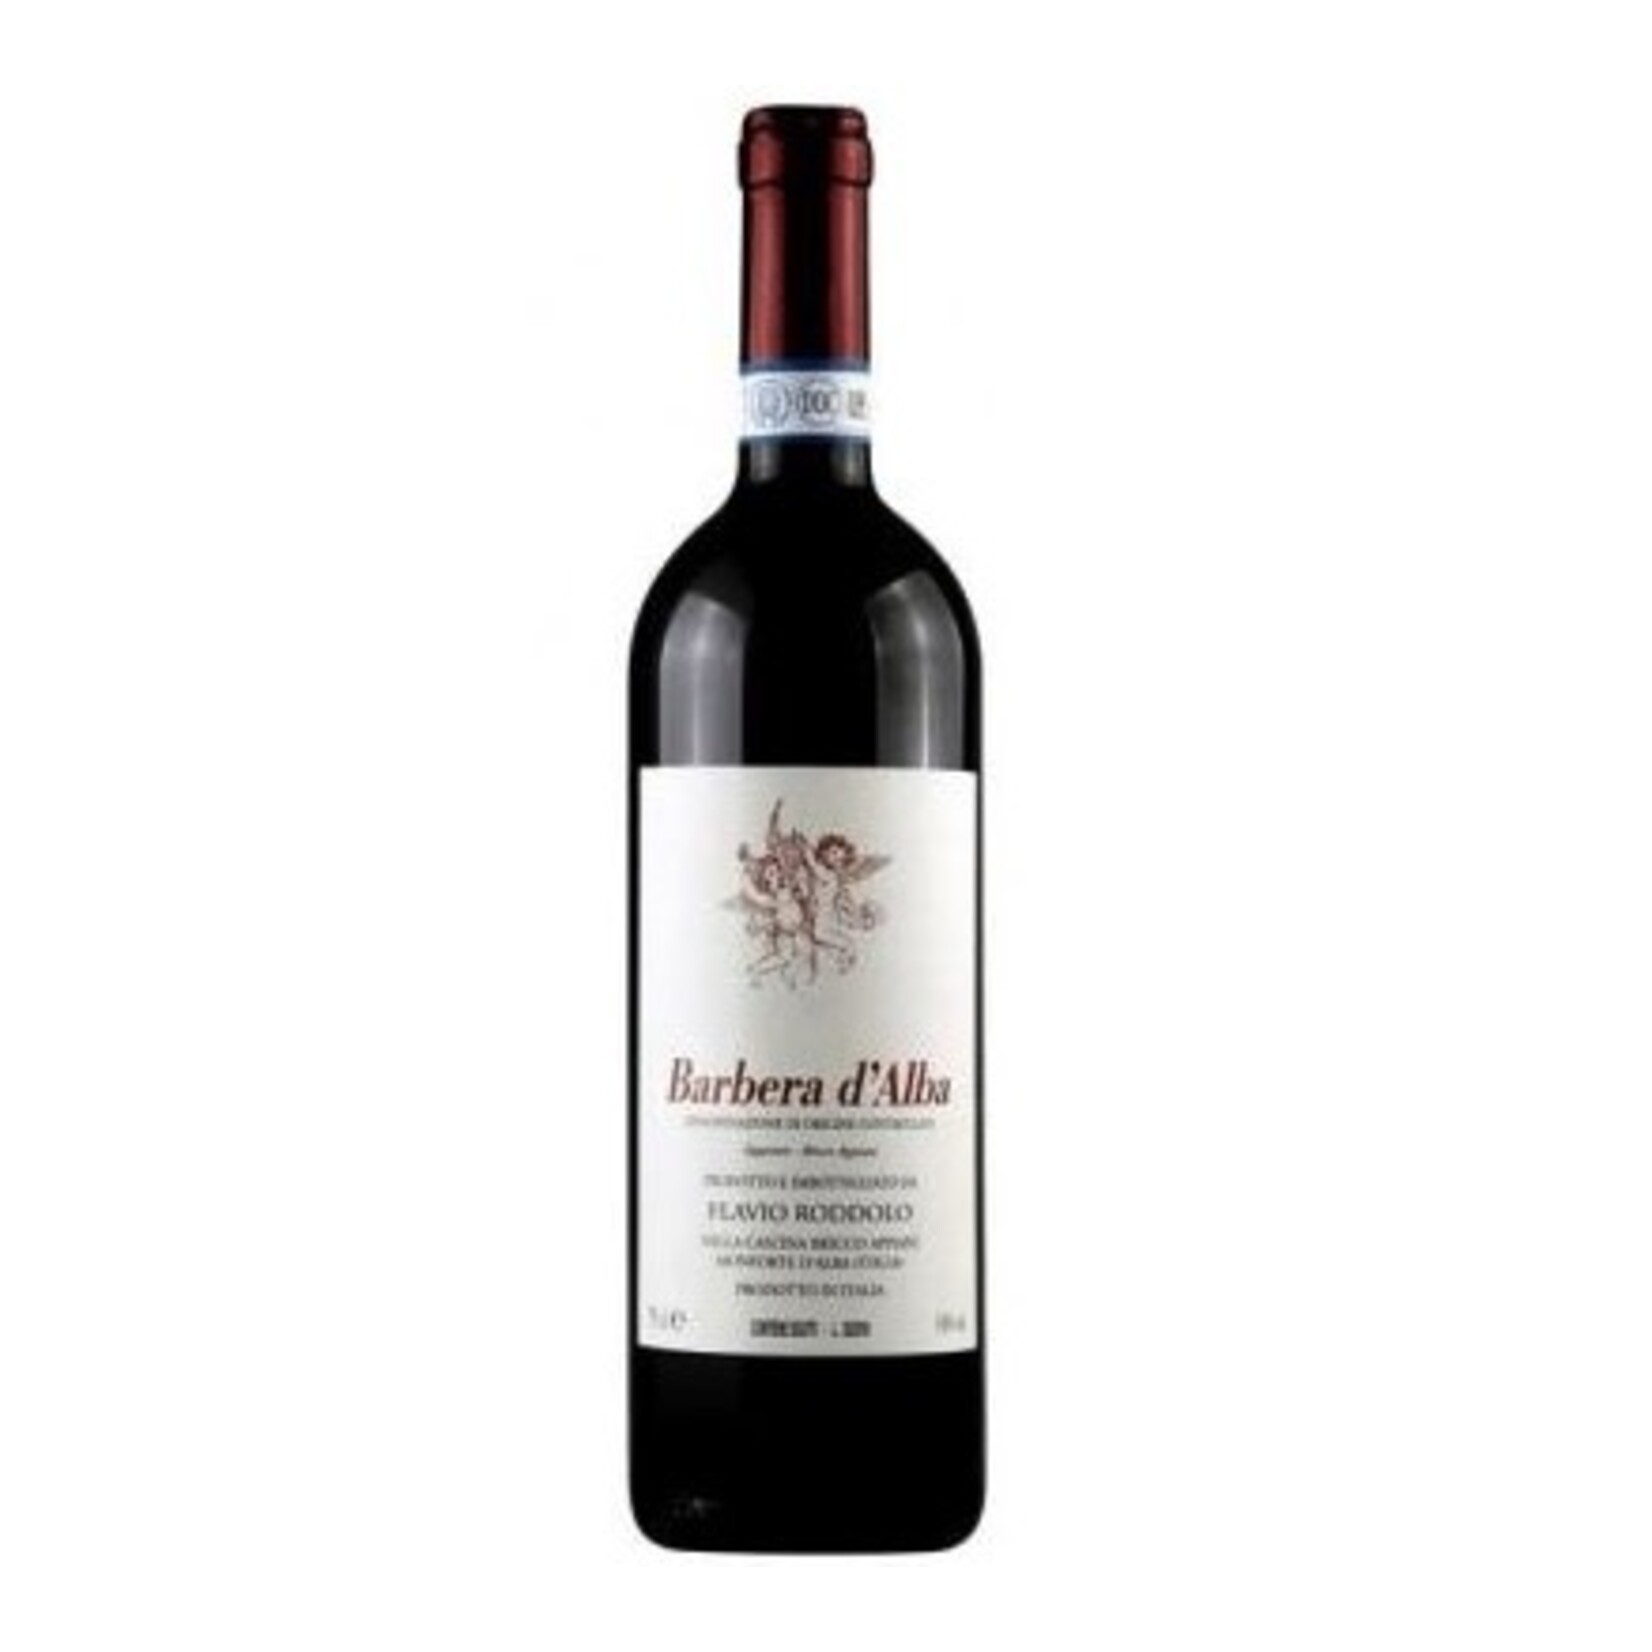 Wine Flavio Roddolo Barbera d'Alba Bricco Appiani 2012